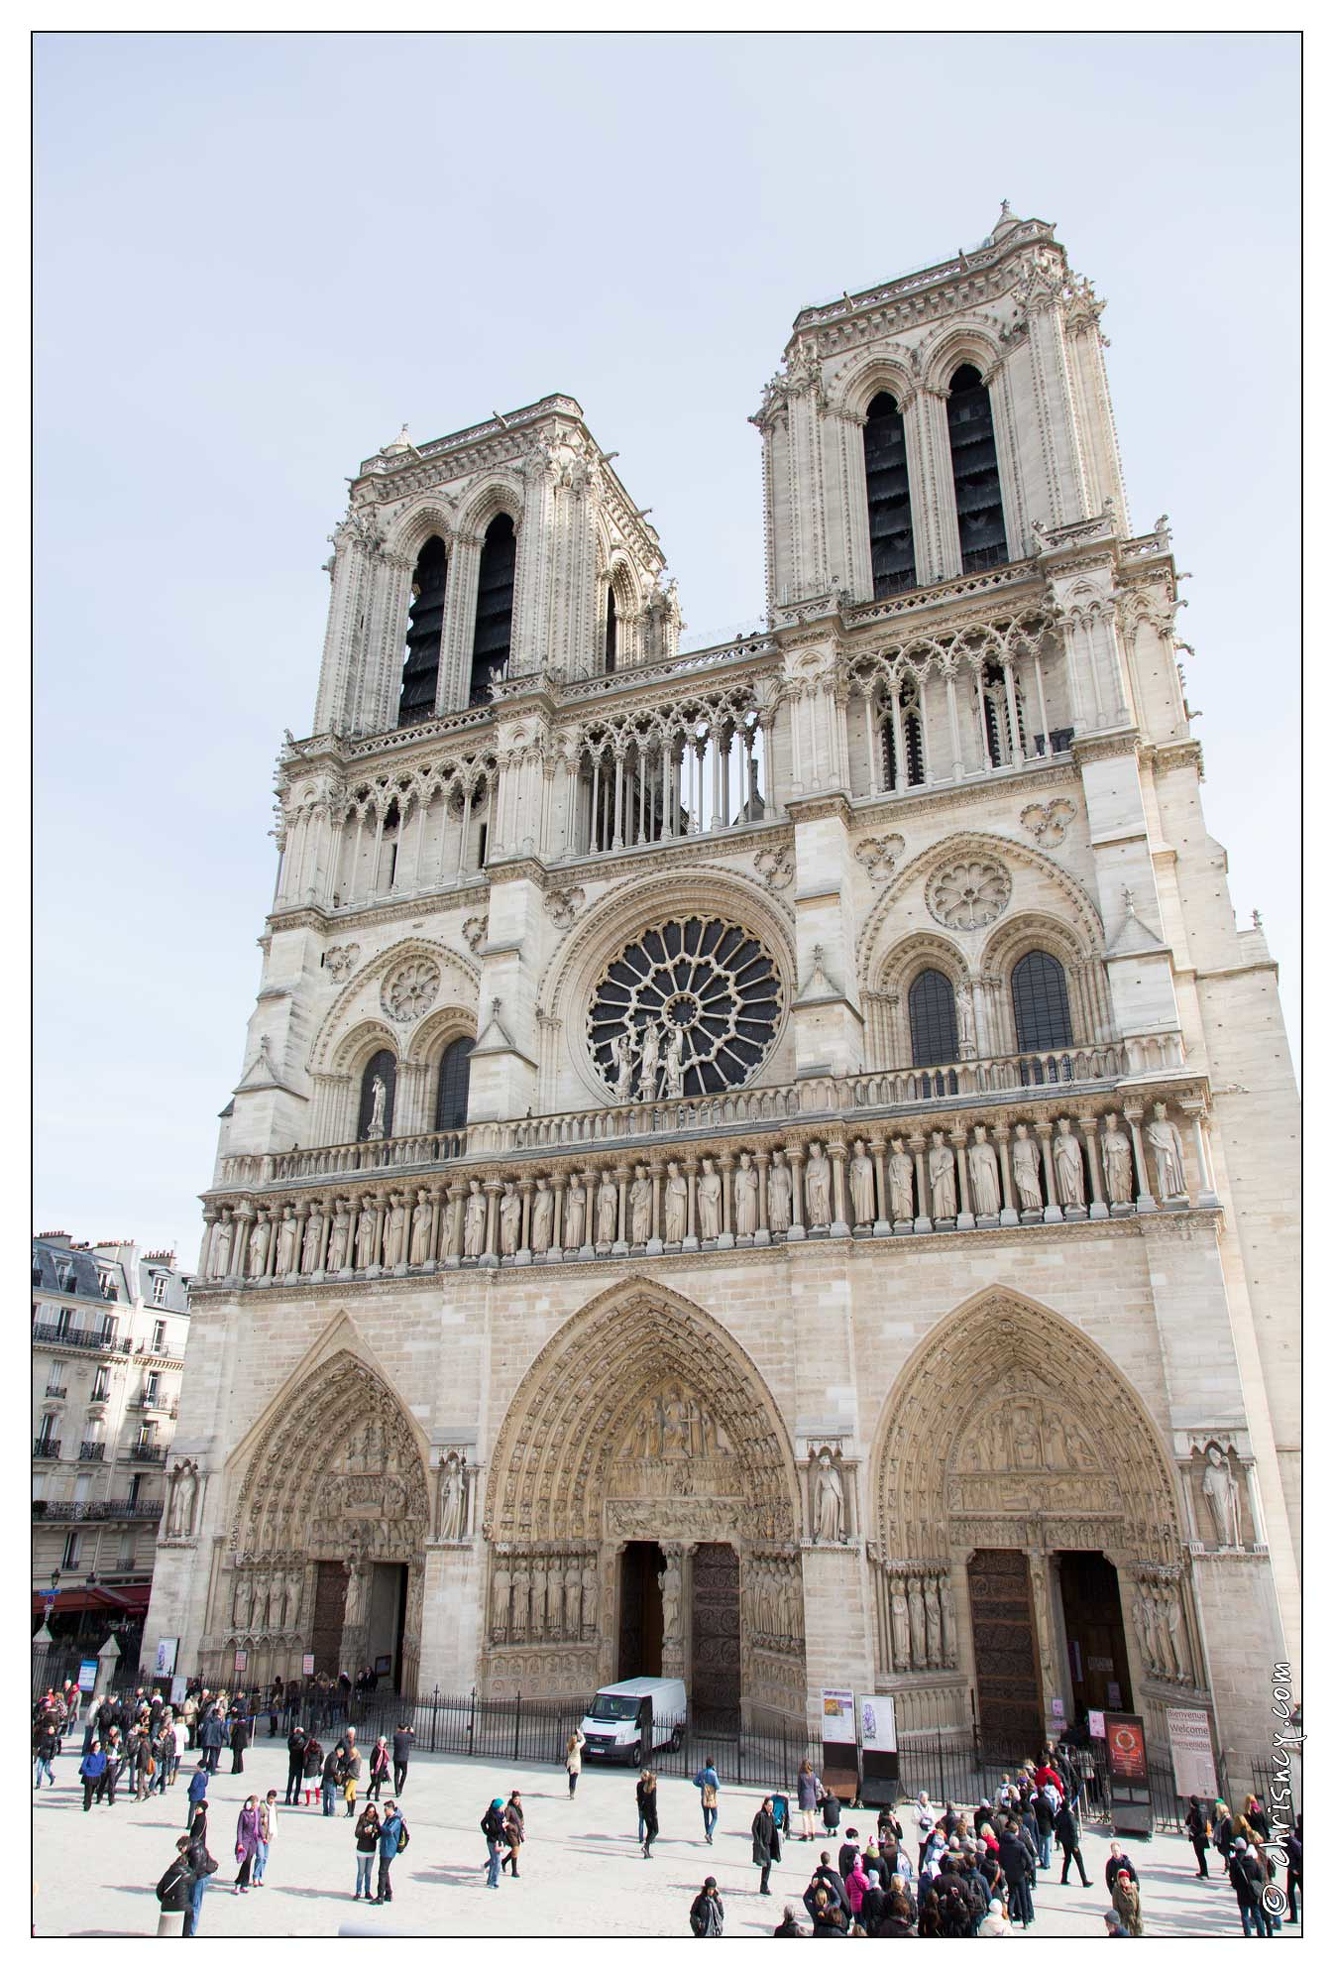 20130315-09_3630-Paris_Notre_Dame.jpg